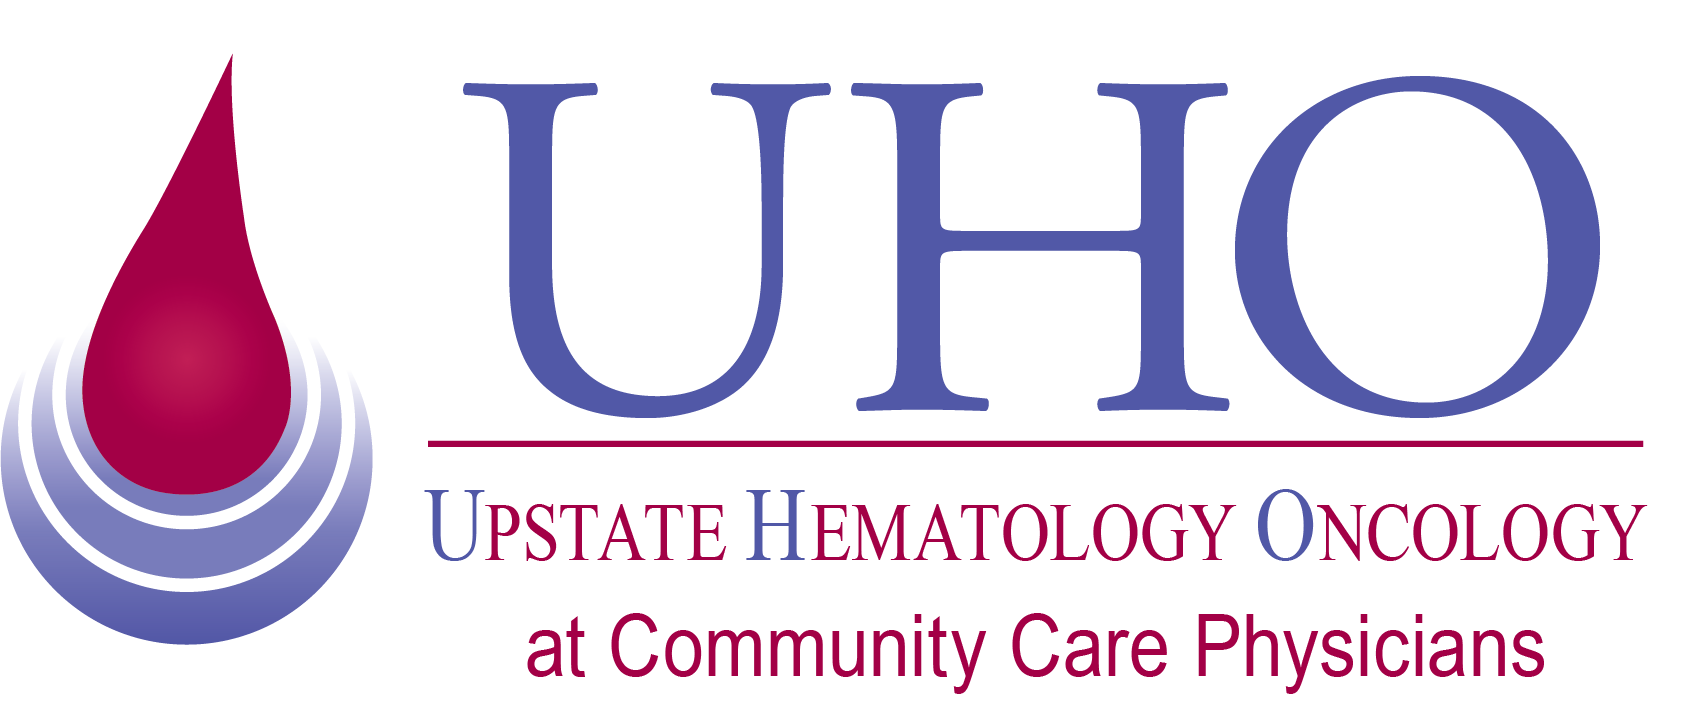 Upstate Hematology Oncology